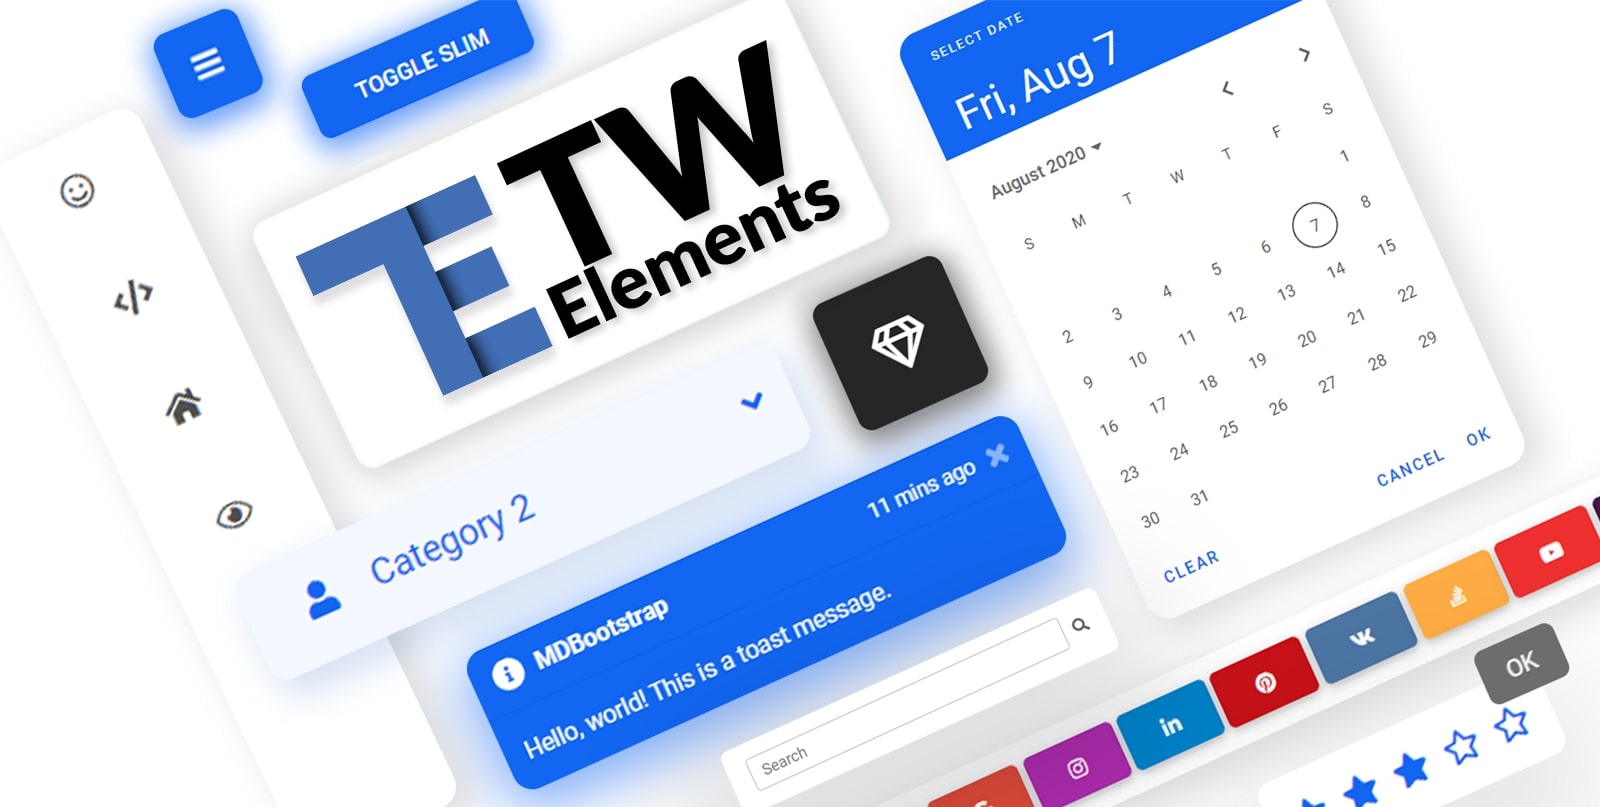 TW-Elements